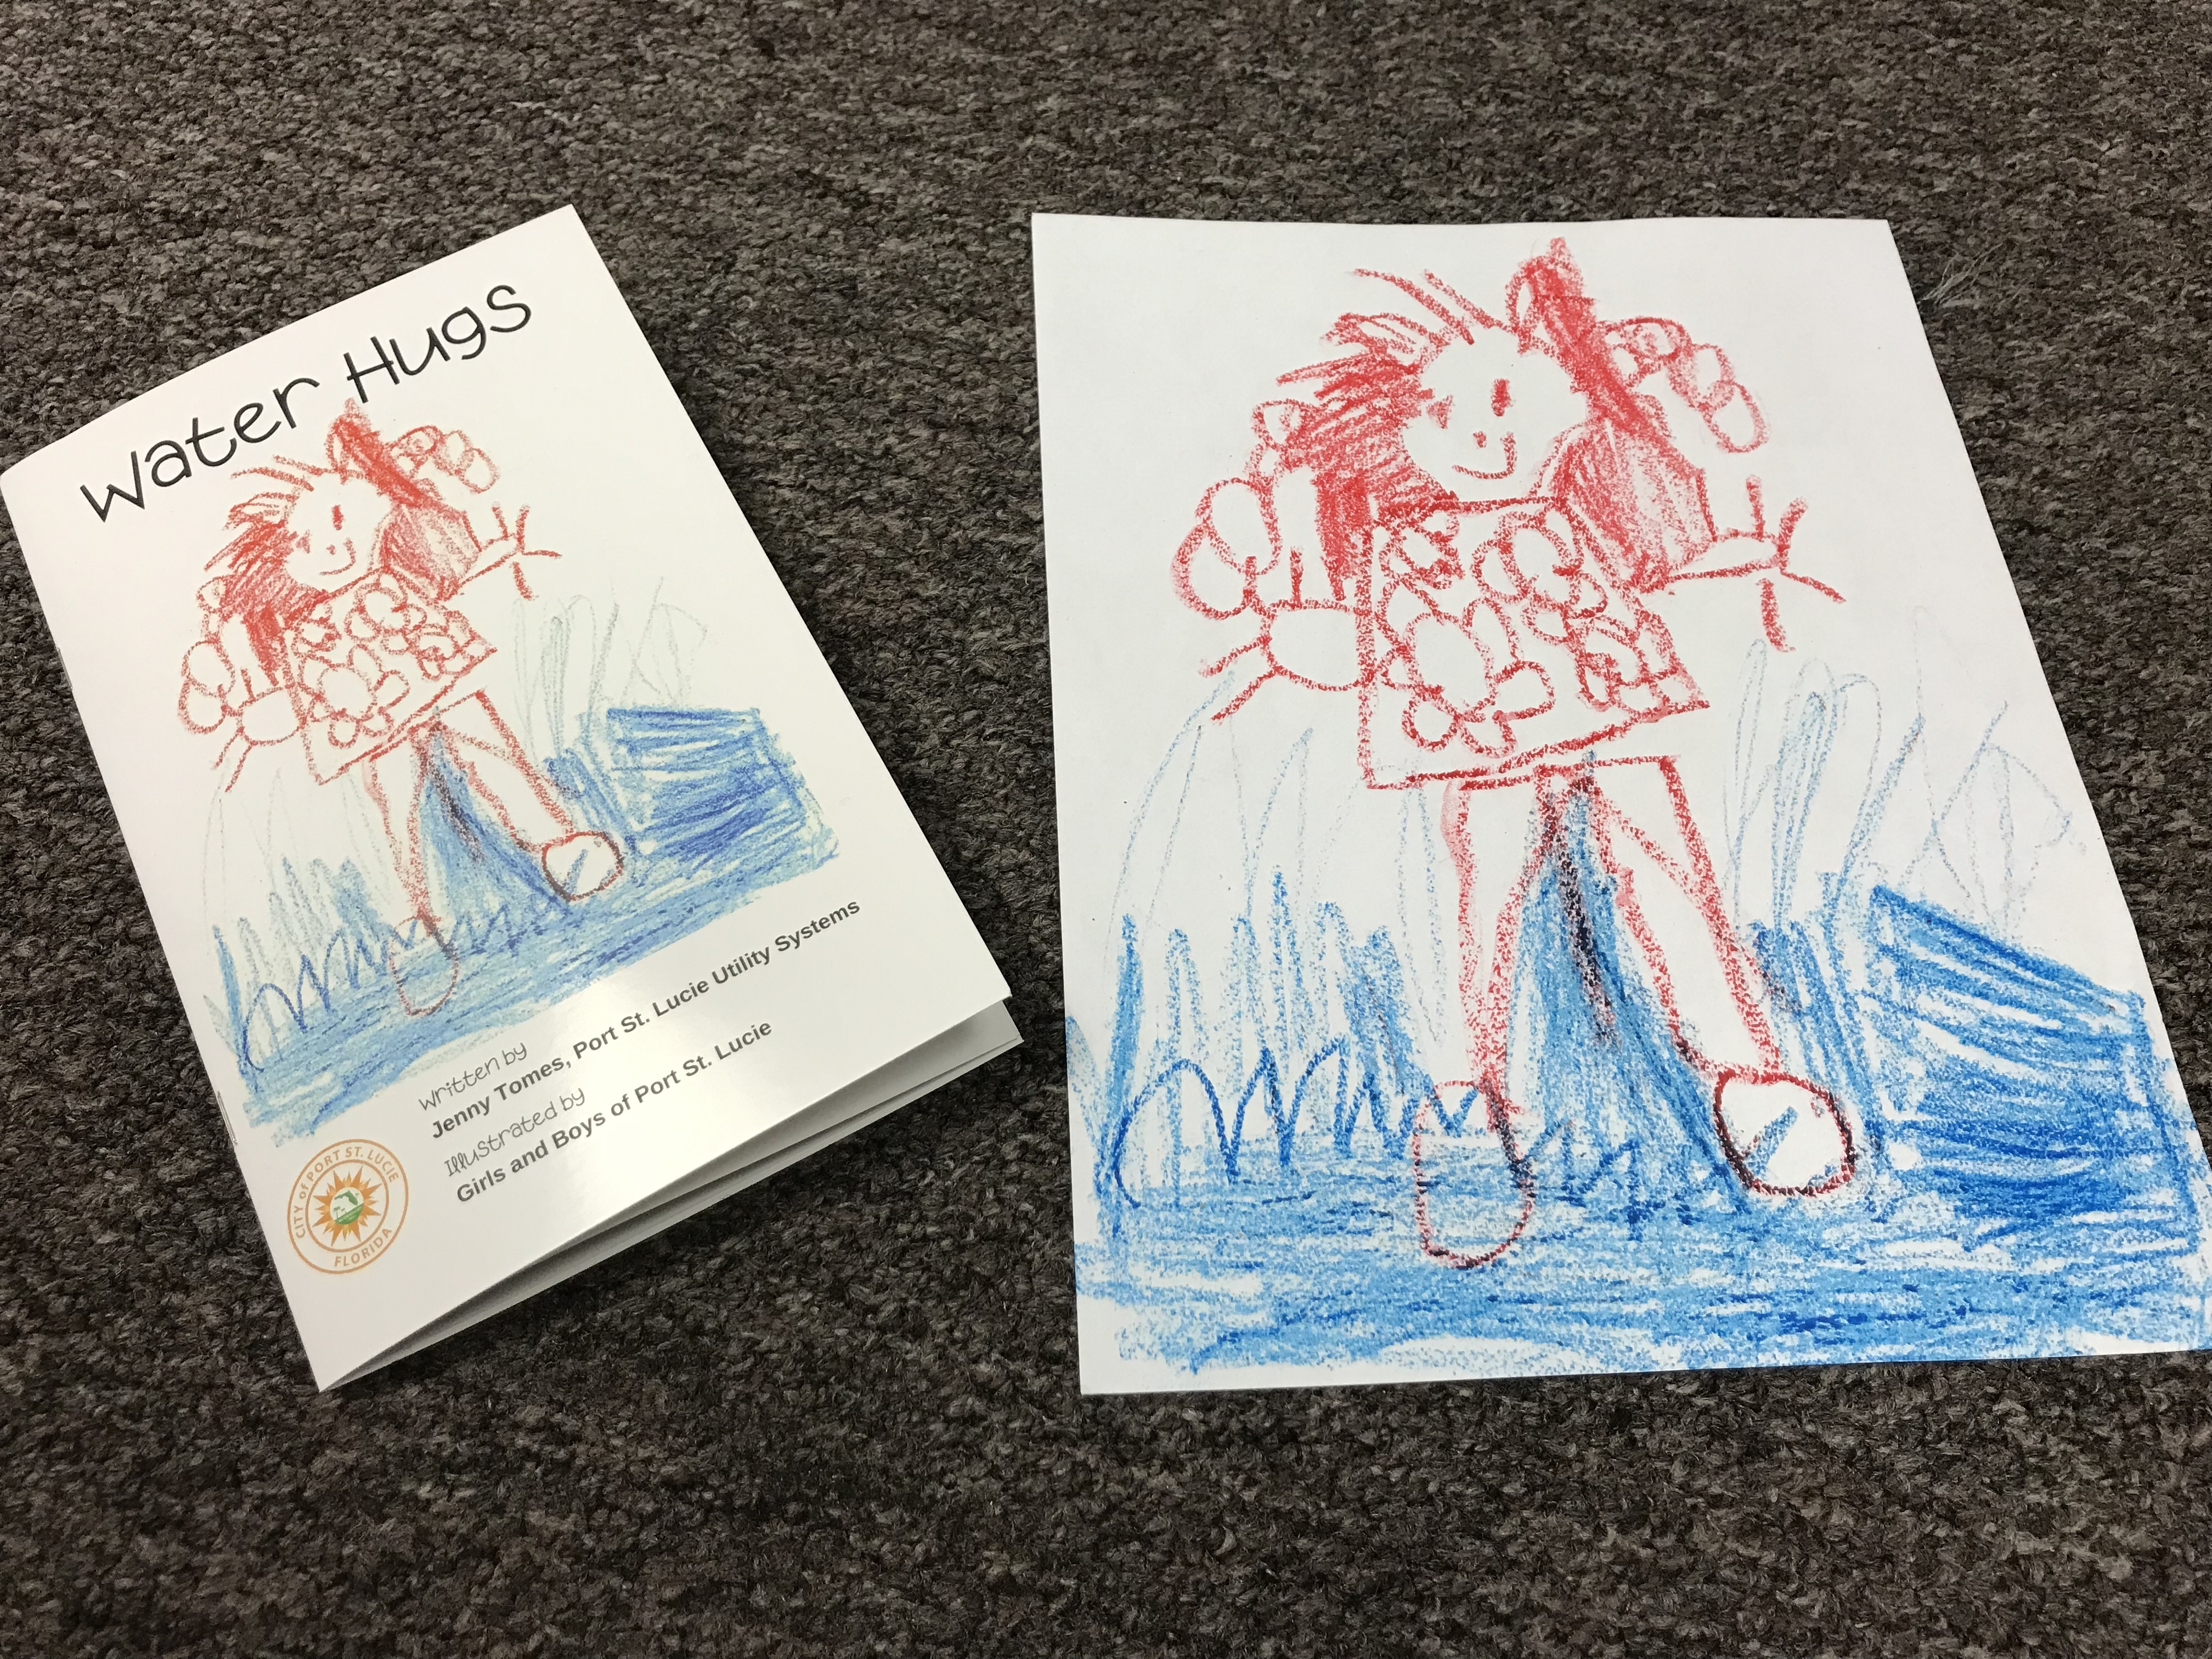 Water Hugs book shown beside original cover artwork drawing